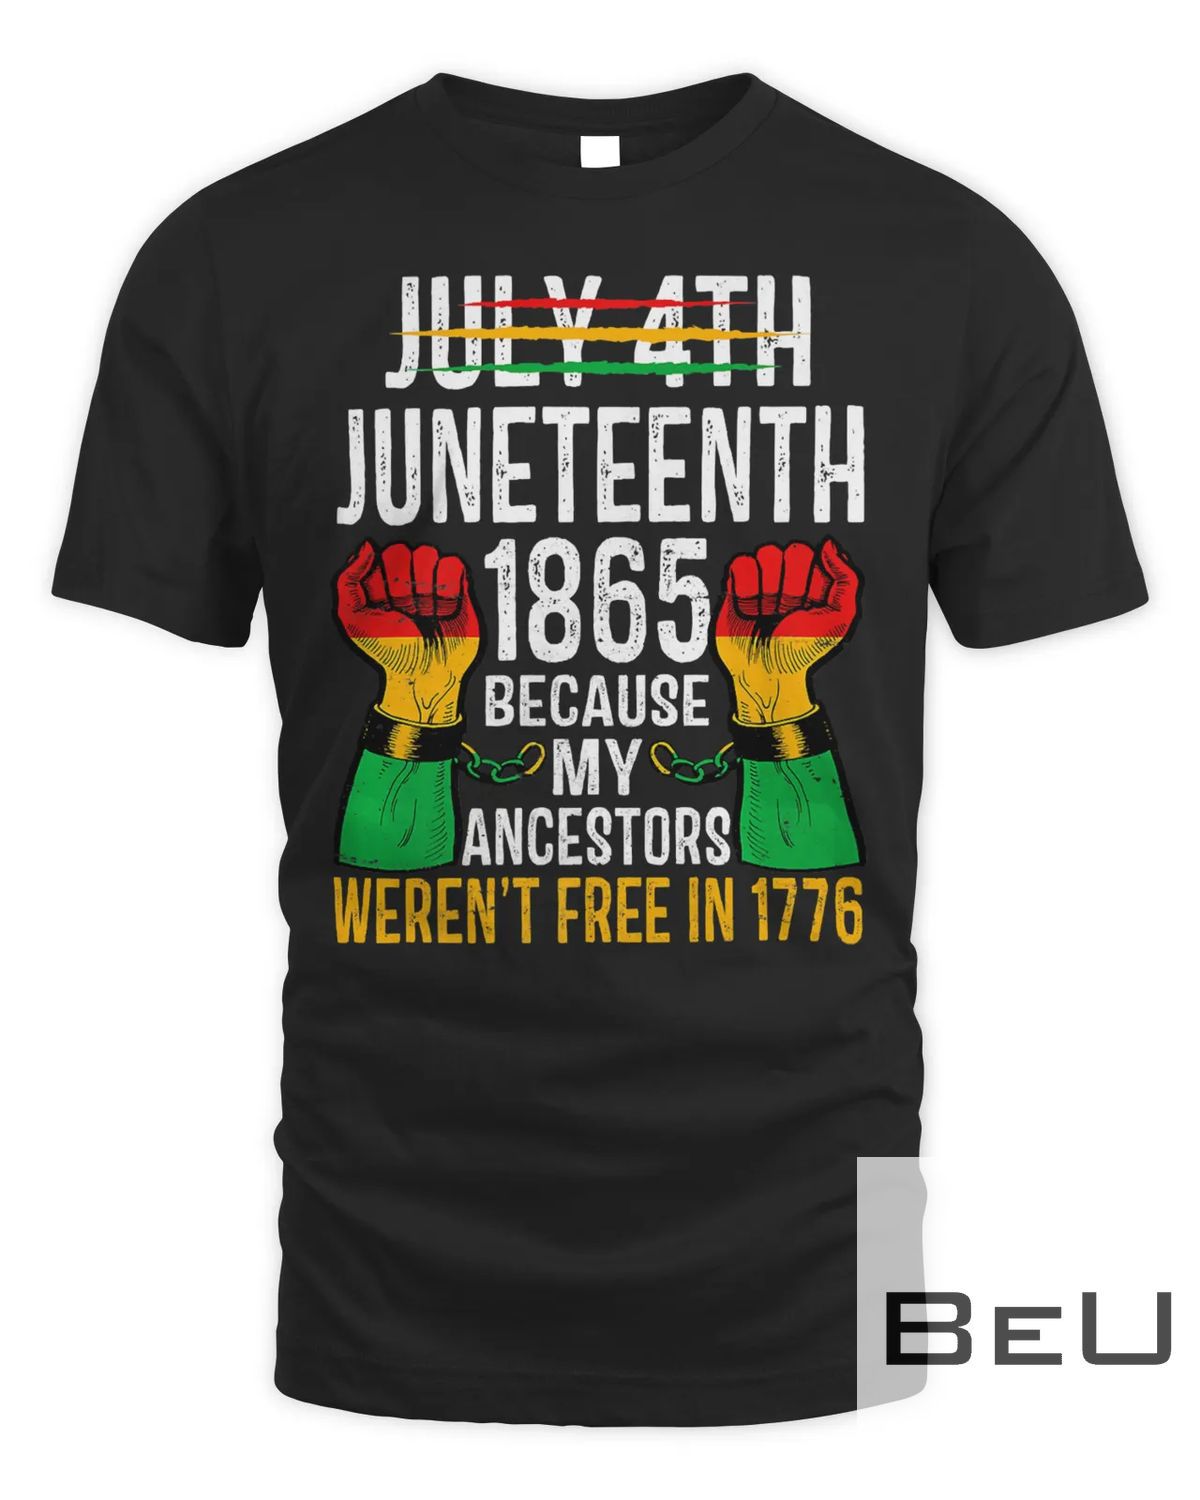 Juneteenth 1865 Not July 4th Because Ancestors Weren't Free T-shirt